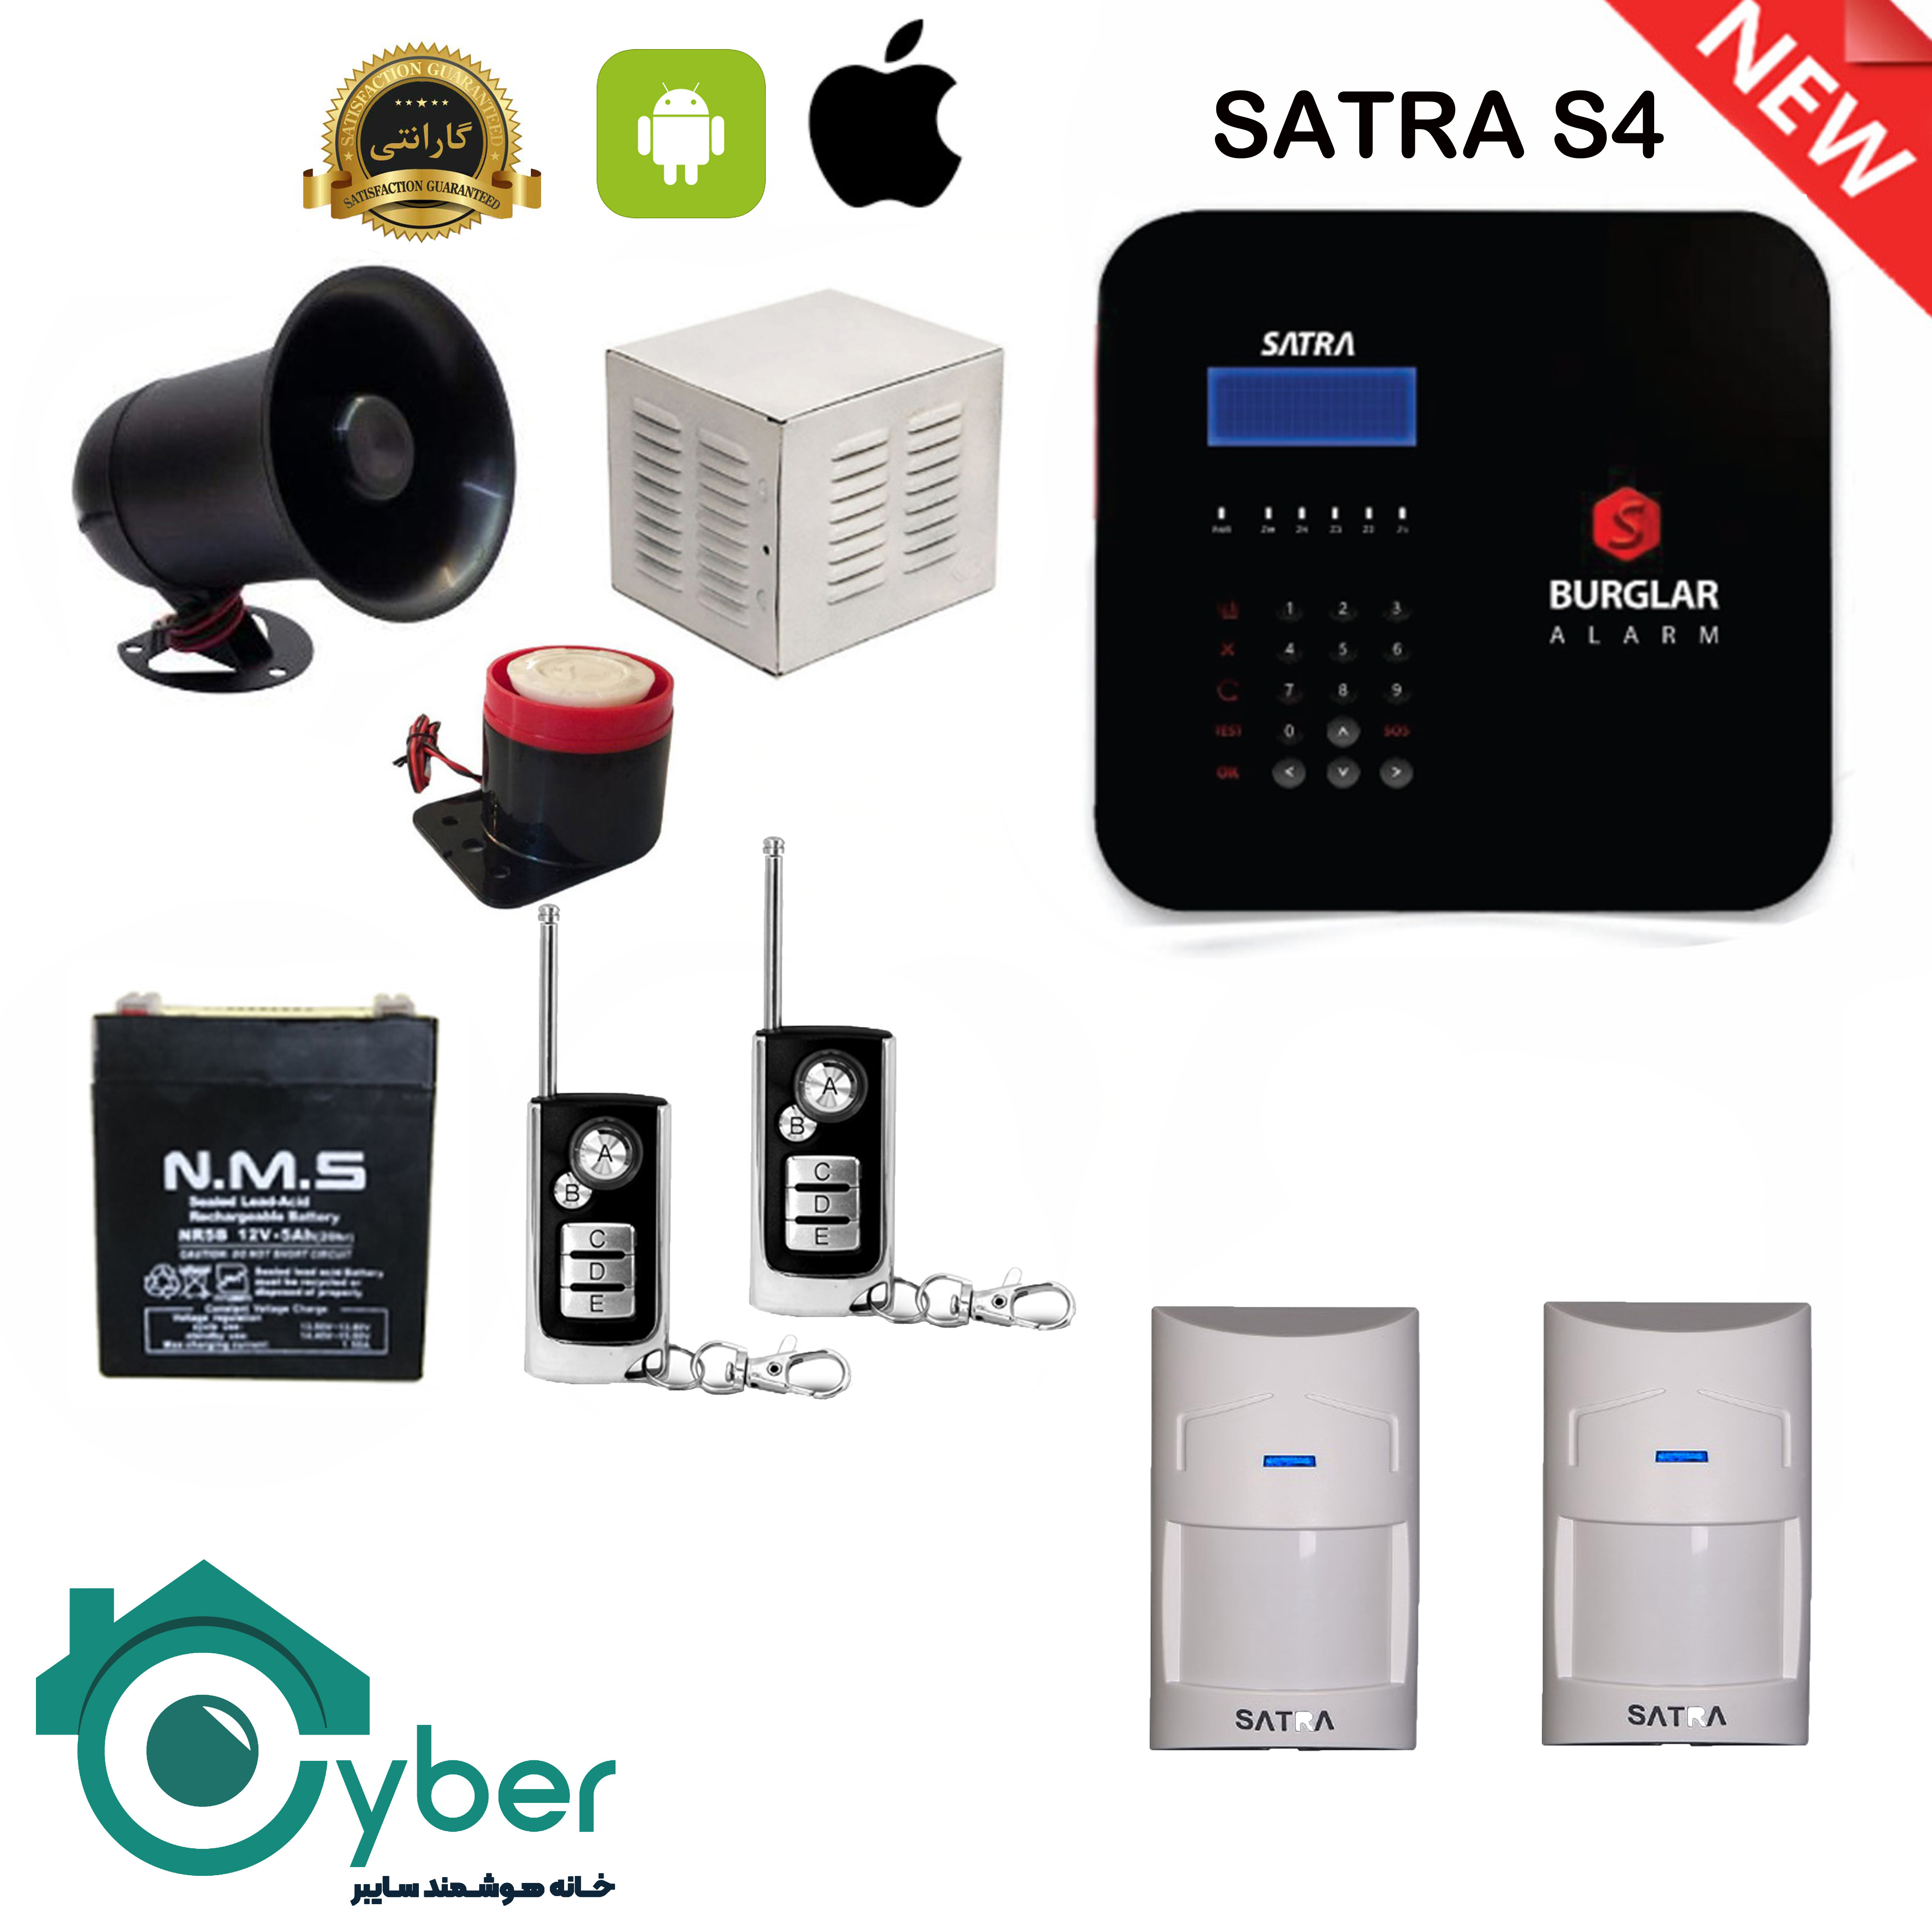 پکیج کامل دزدگیر اماکن SARTA S4 ساترا - 2 عدد سنسور بی سیم